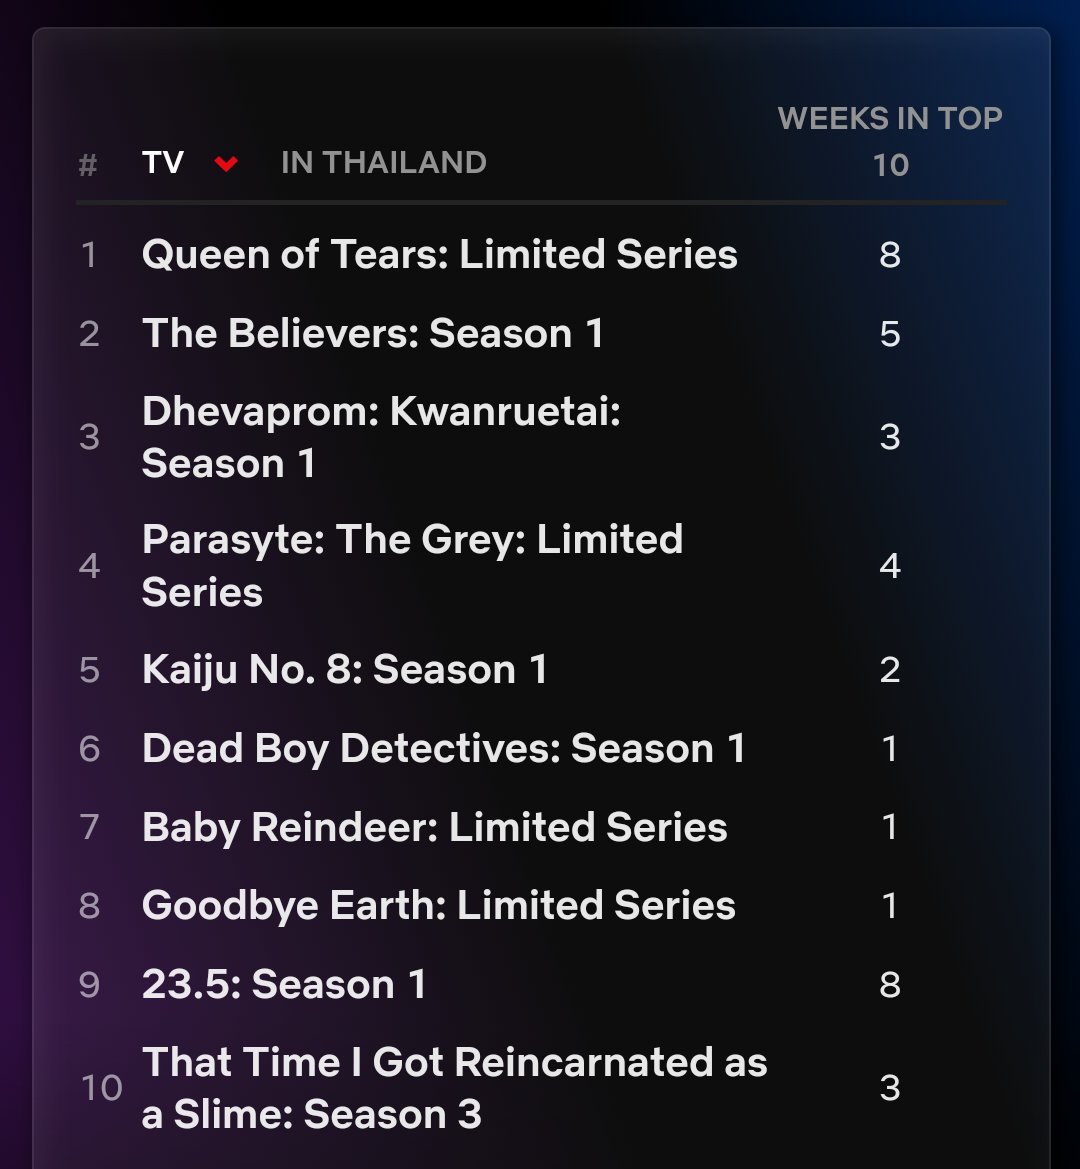 ให้ตัวเลขอธิบาย Top 10 Netflix ประเทศไทย
#23point5EP10 อยู่อันดับ 9 ติด Top 10 มาแล้ว 8 สัปดาห์
#ขวัญฤทัยEP11 อยู่ลำดับที่ 3 ติด Top 10 มาแล้ว 3 สัปดาห์
เจ็มและช่อง 3 ดูเอาไว้นะ การลง Streaming มันได้ยอดคนดูสูงขนาดไหน